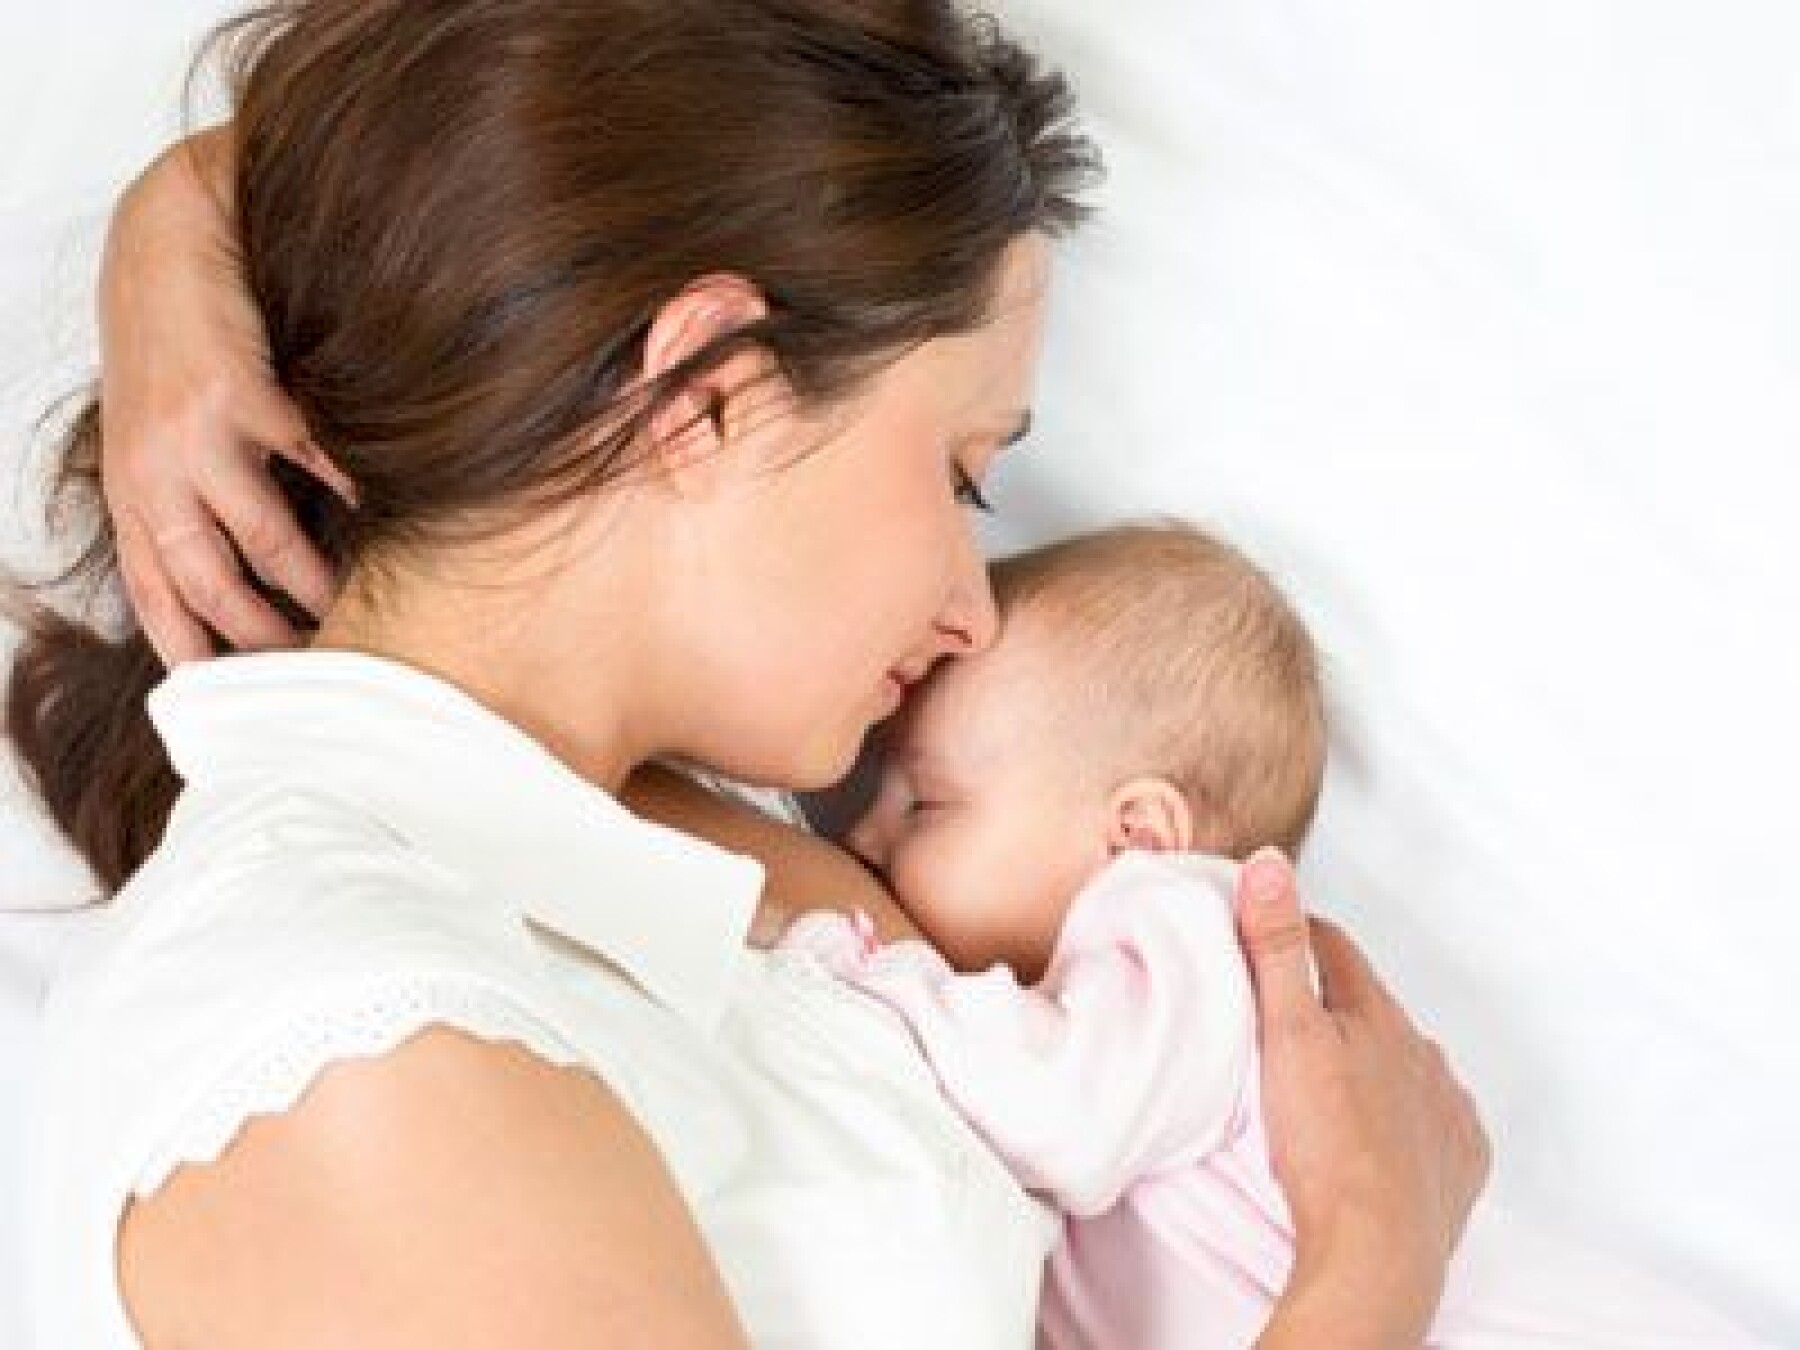 Infantile ou maternel : quel est le meilleur lait pour mon bébé ?